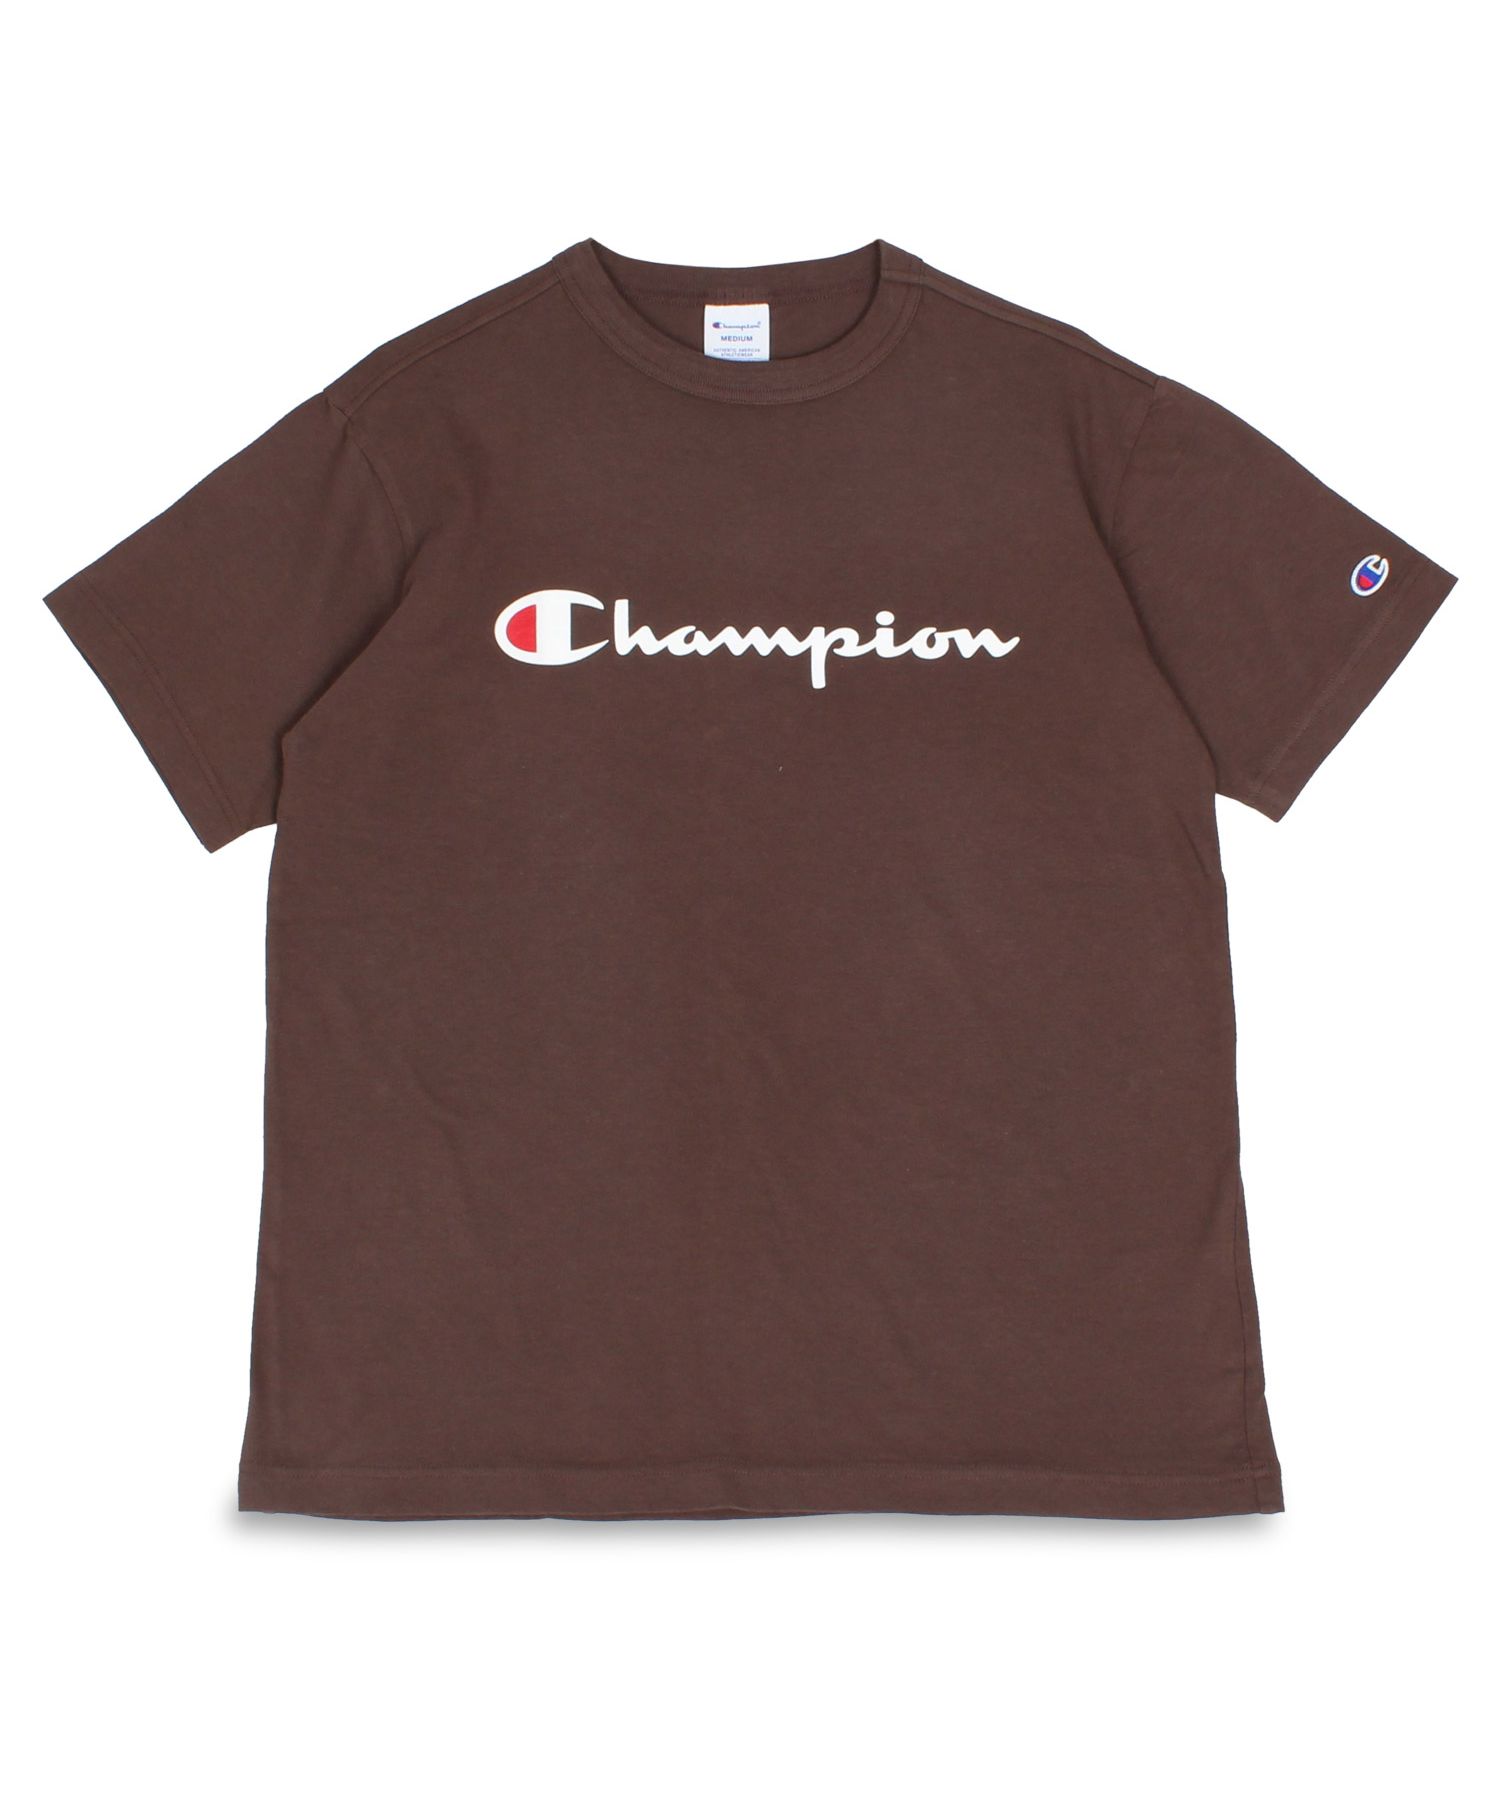 チャンピオン ロゴ刺繍 スウェット パーカー 2XL ブラウン グレー茶色